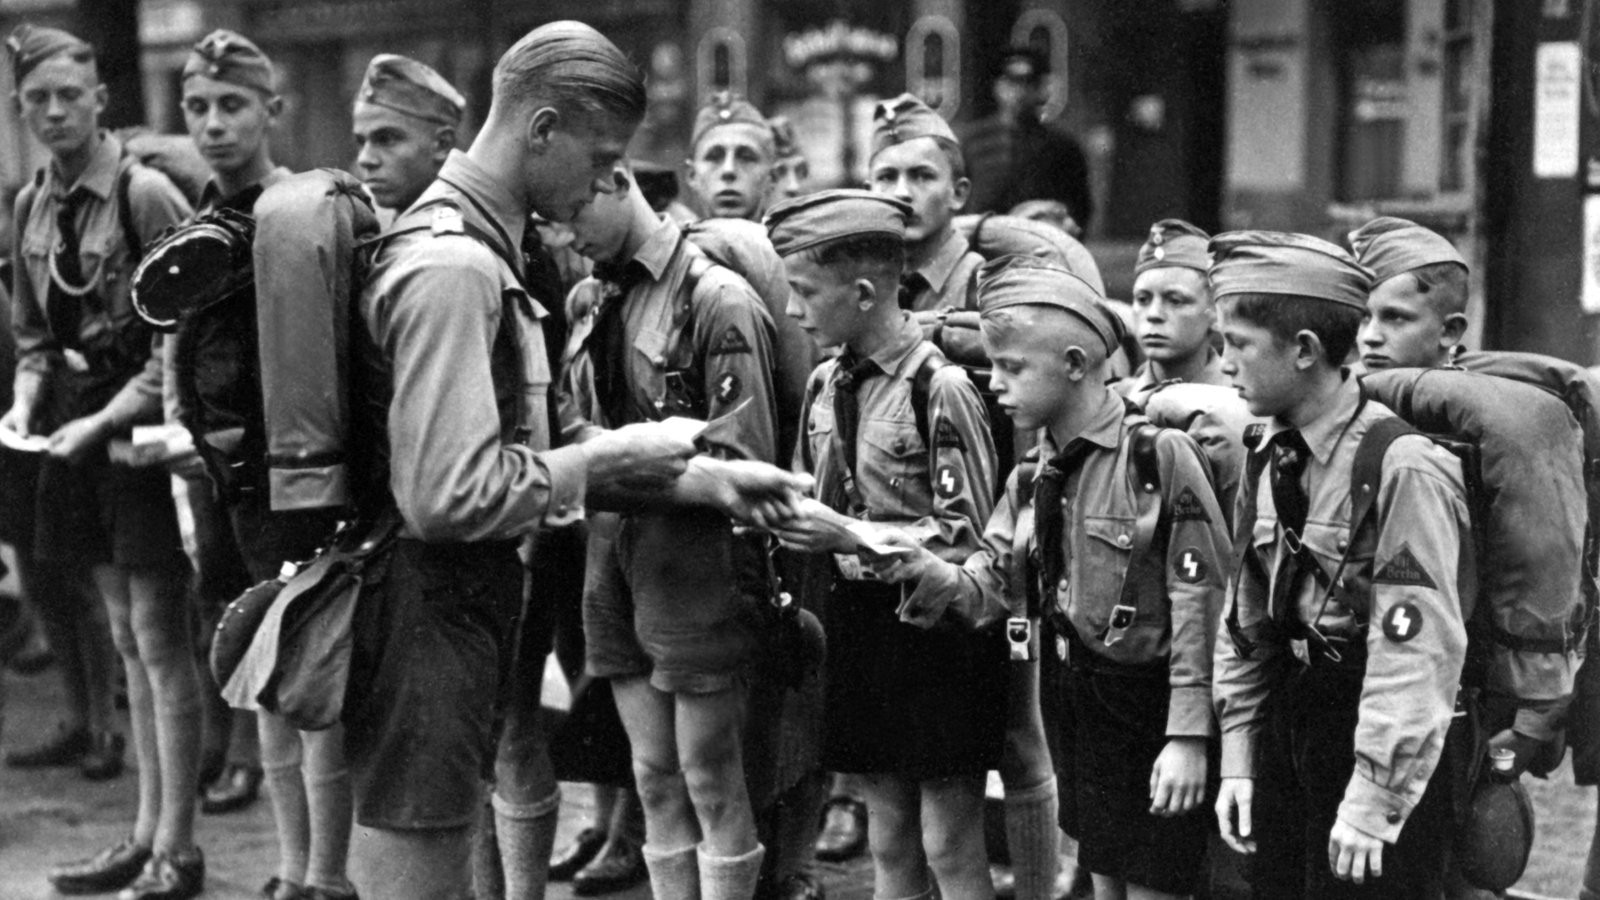 Soldaten Haarschnitt
 Drittes Reich Kindheit im Zweiten Weltkrieg